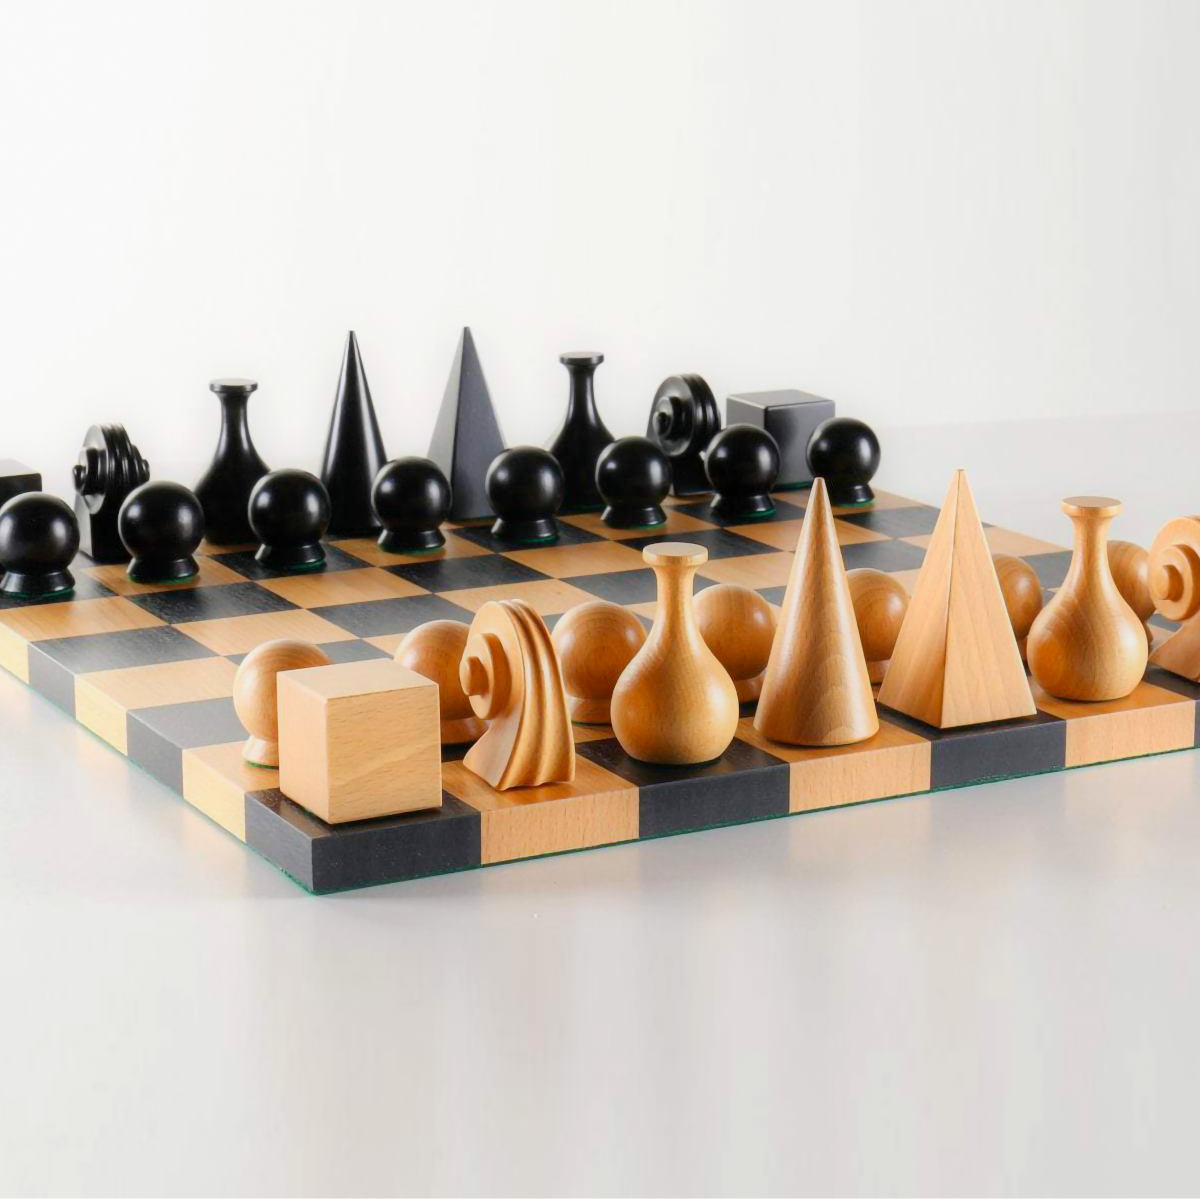 Zwei Schach Stück Könige und 2 Damen auf dem Schachbrett